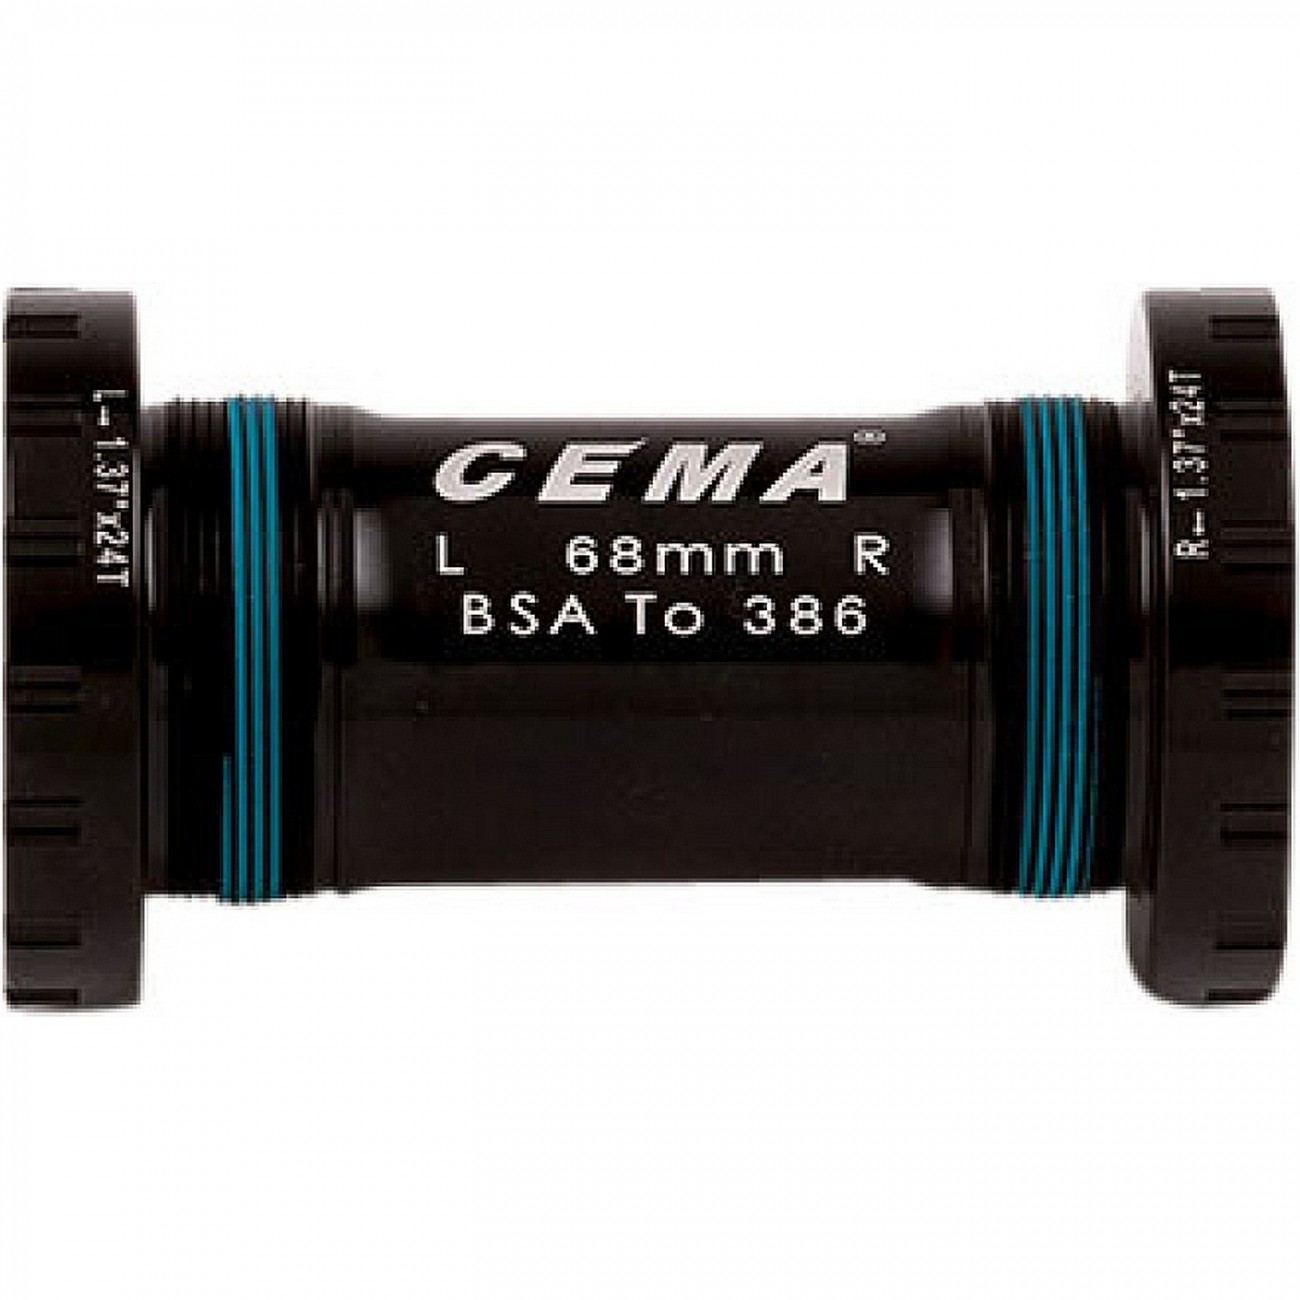 Bsa pour fsa386/rotor 30mm w: 68/73 - 1 37" x 24 t mm acier inoxydable - noir - 1